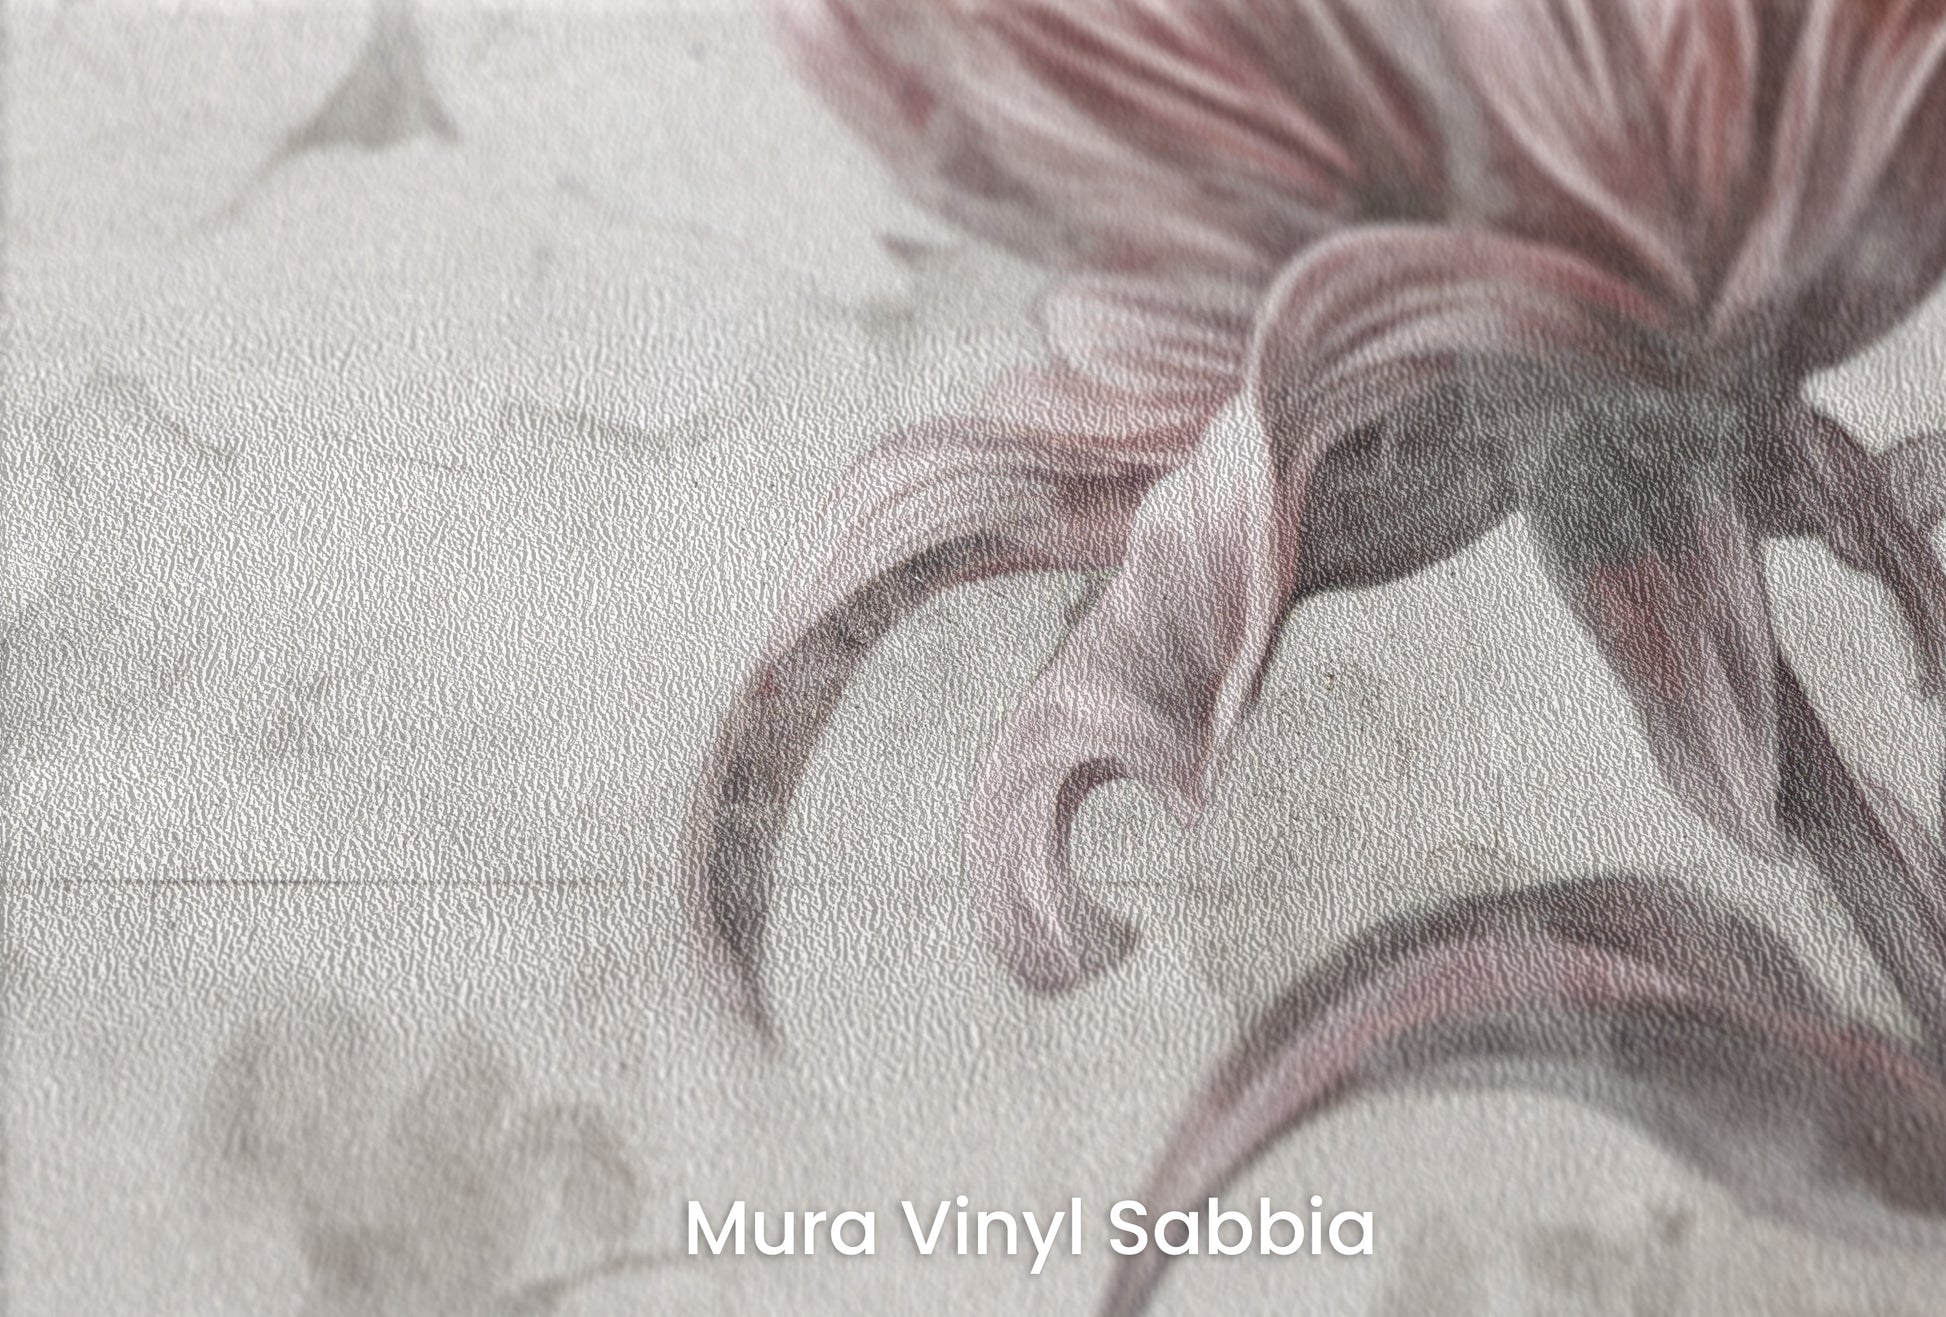 Zbliżenie na artystyczną fototapetę o nazwie FLORAL ELEGANCE IN MONOCHROME na podłożu Mura Vinyl Sabbia struktura grubego ziarna piasku.